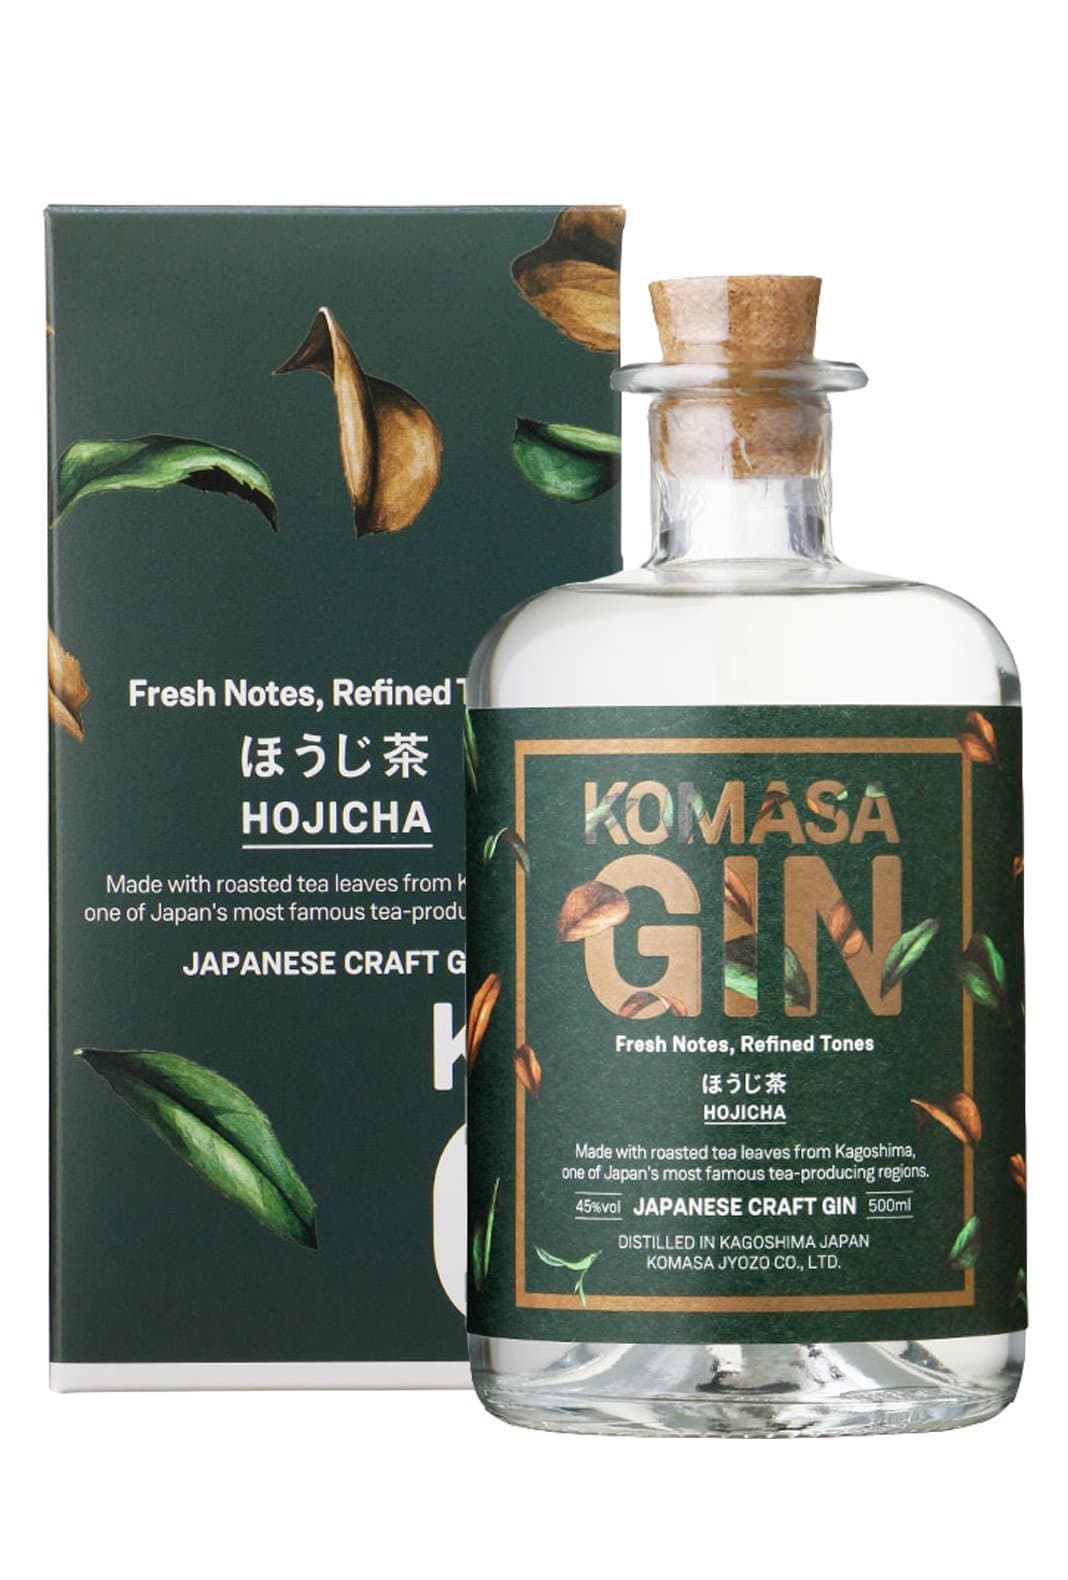 Komasa Jyozo Hojicha Gin (Green Tea) 40% 500ml | Gin | Shop online at Spirits of France